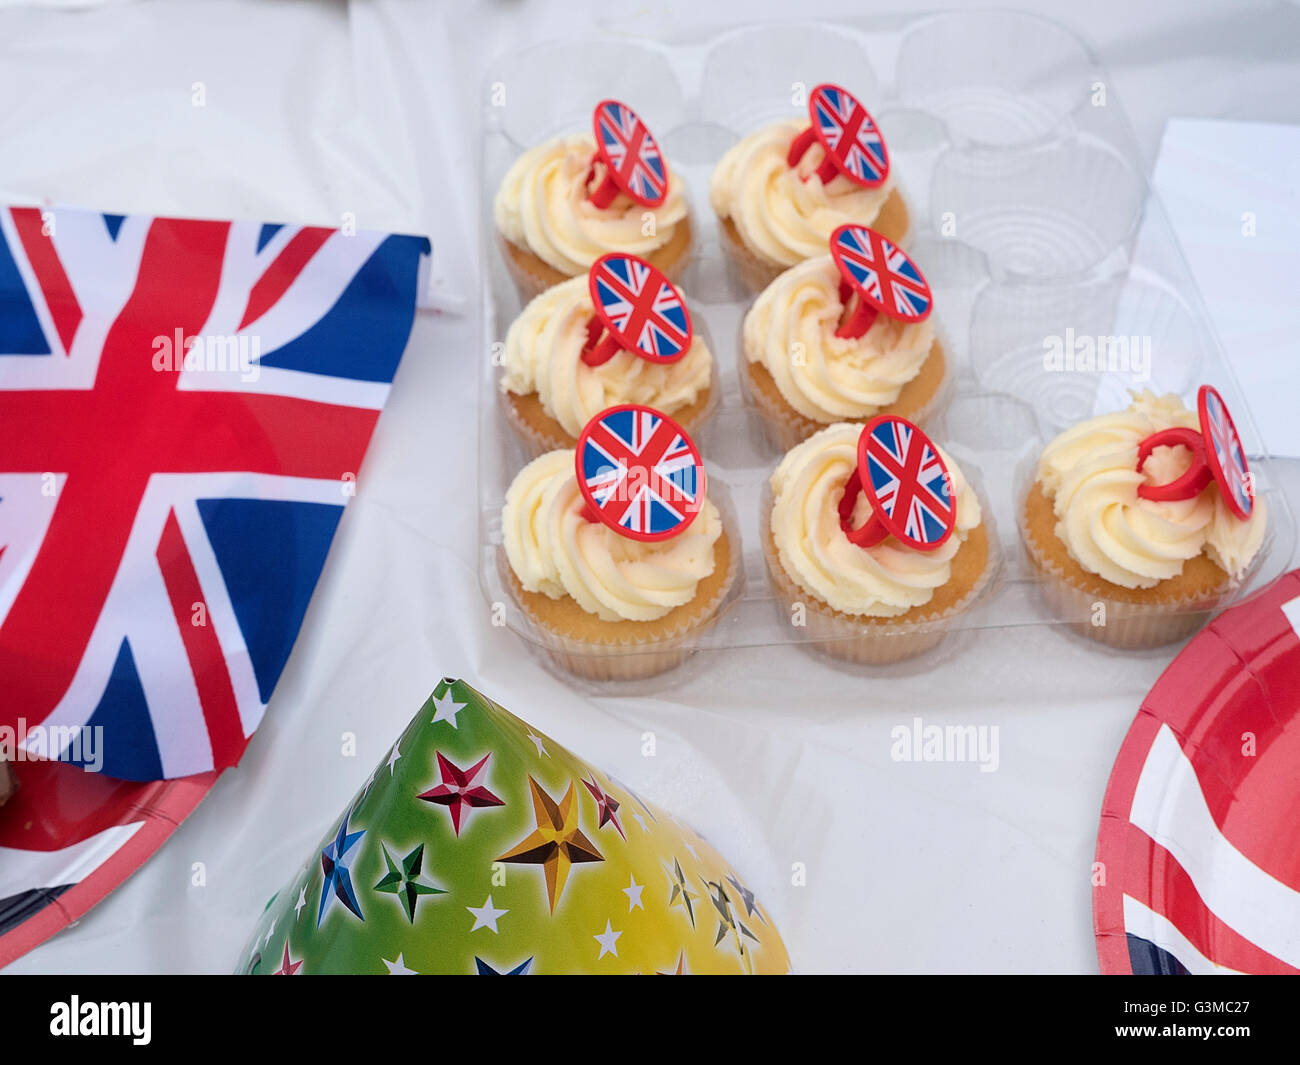 Street party en Birchington Kent pour célébrer le 90e anniversaire de la reine Elizabeth II le 12 juin 2016 Banque D'Images